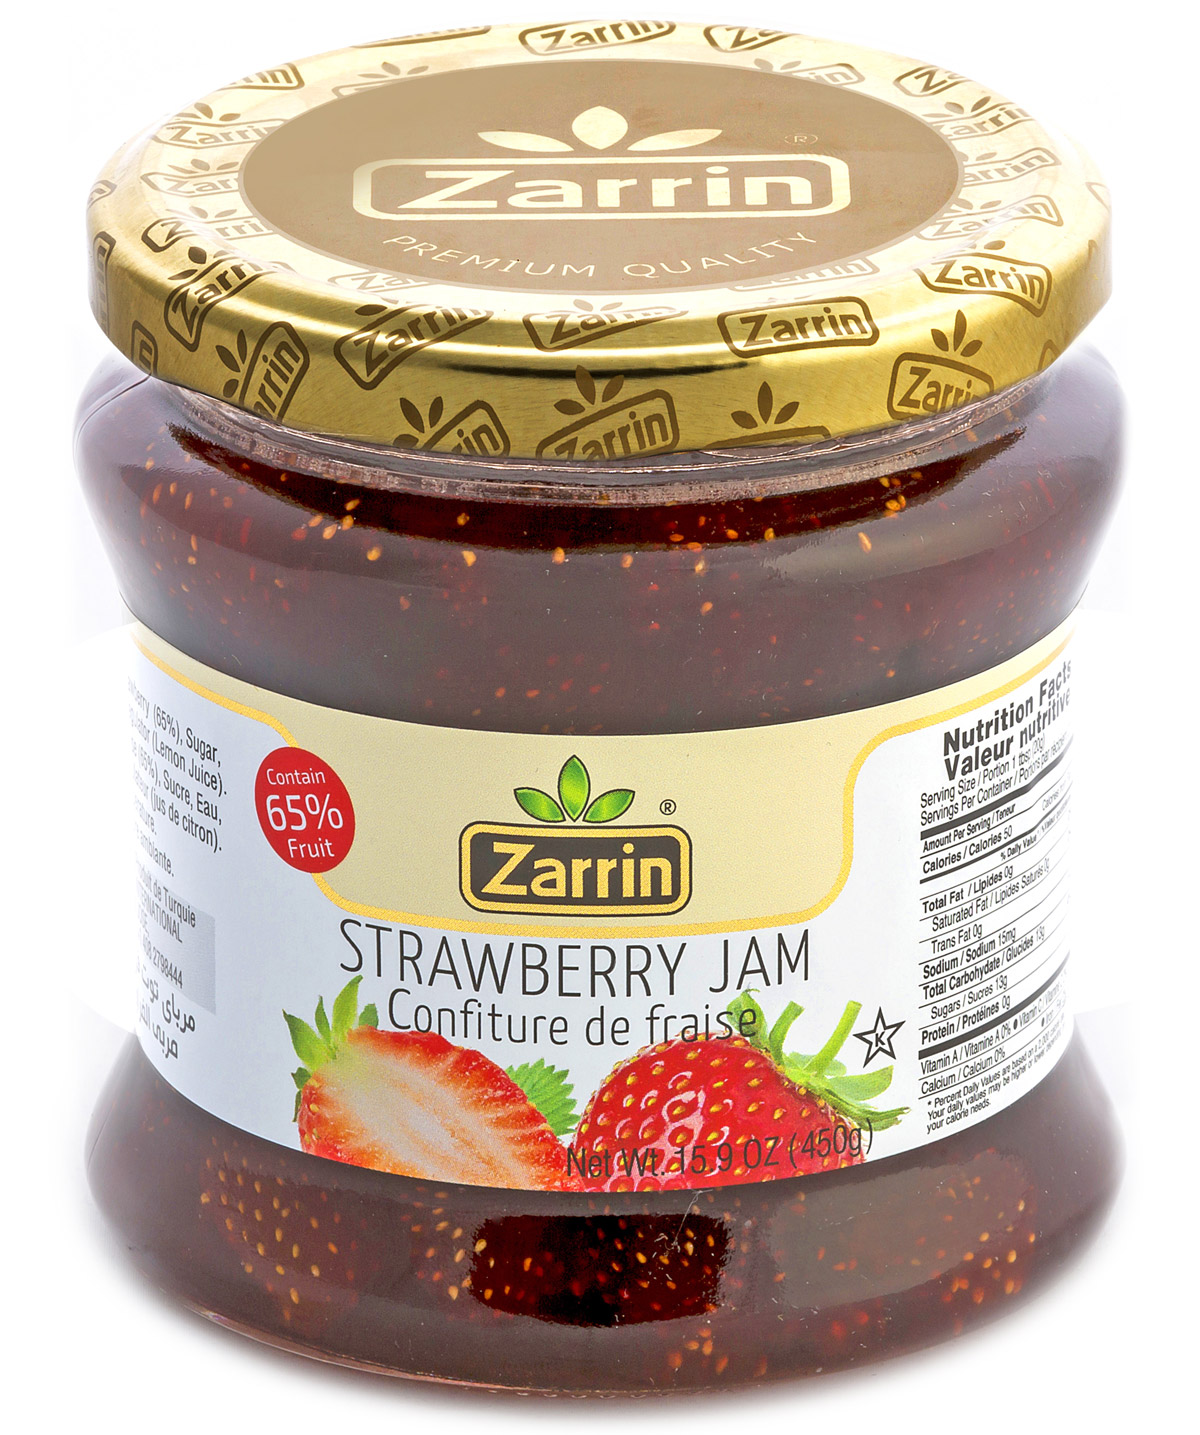 Zarrin Strawberry Jam In Glass Jar